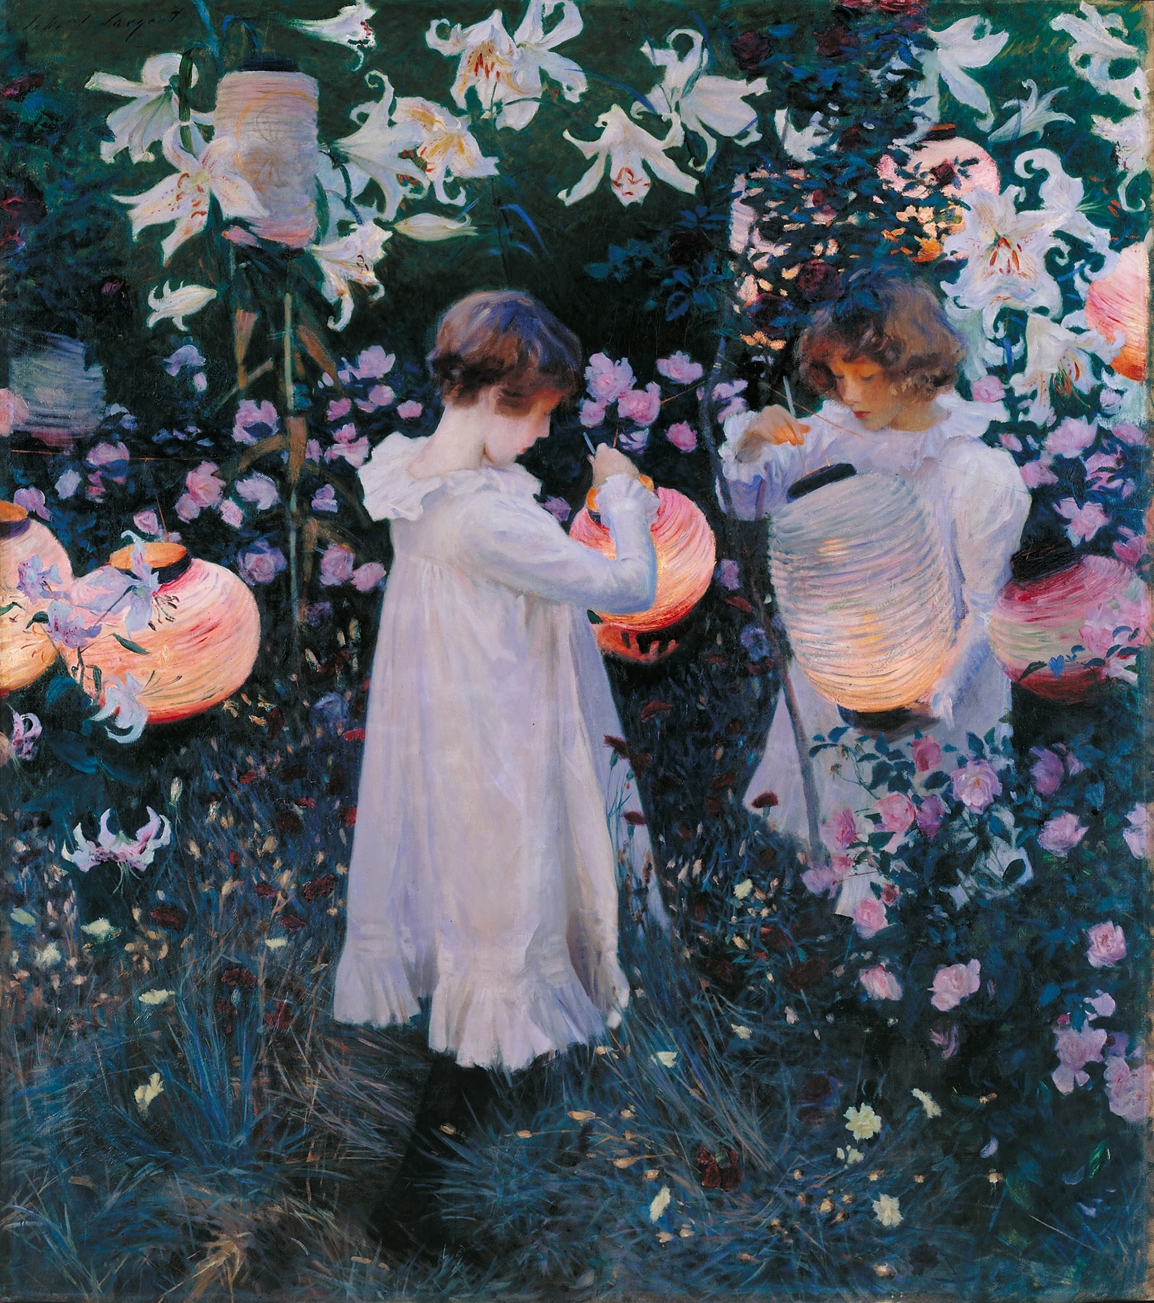 John Singer Sargent's Carnation, Lily, Lily, Rose (1885)